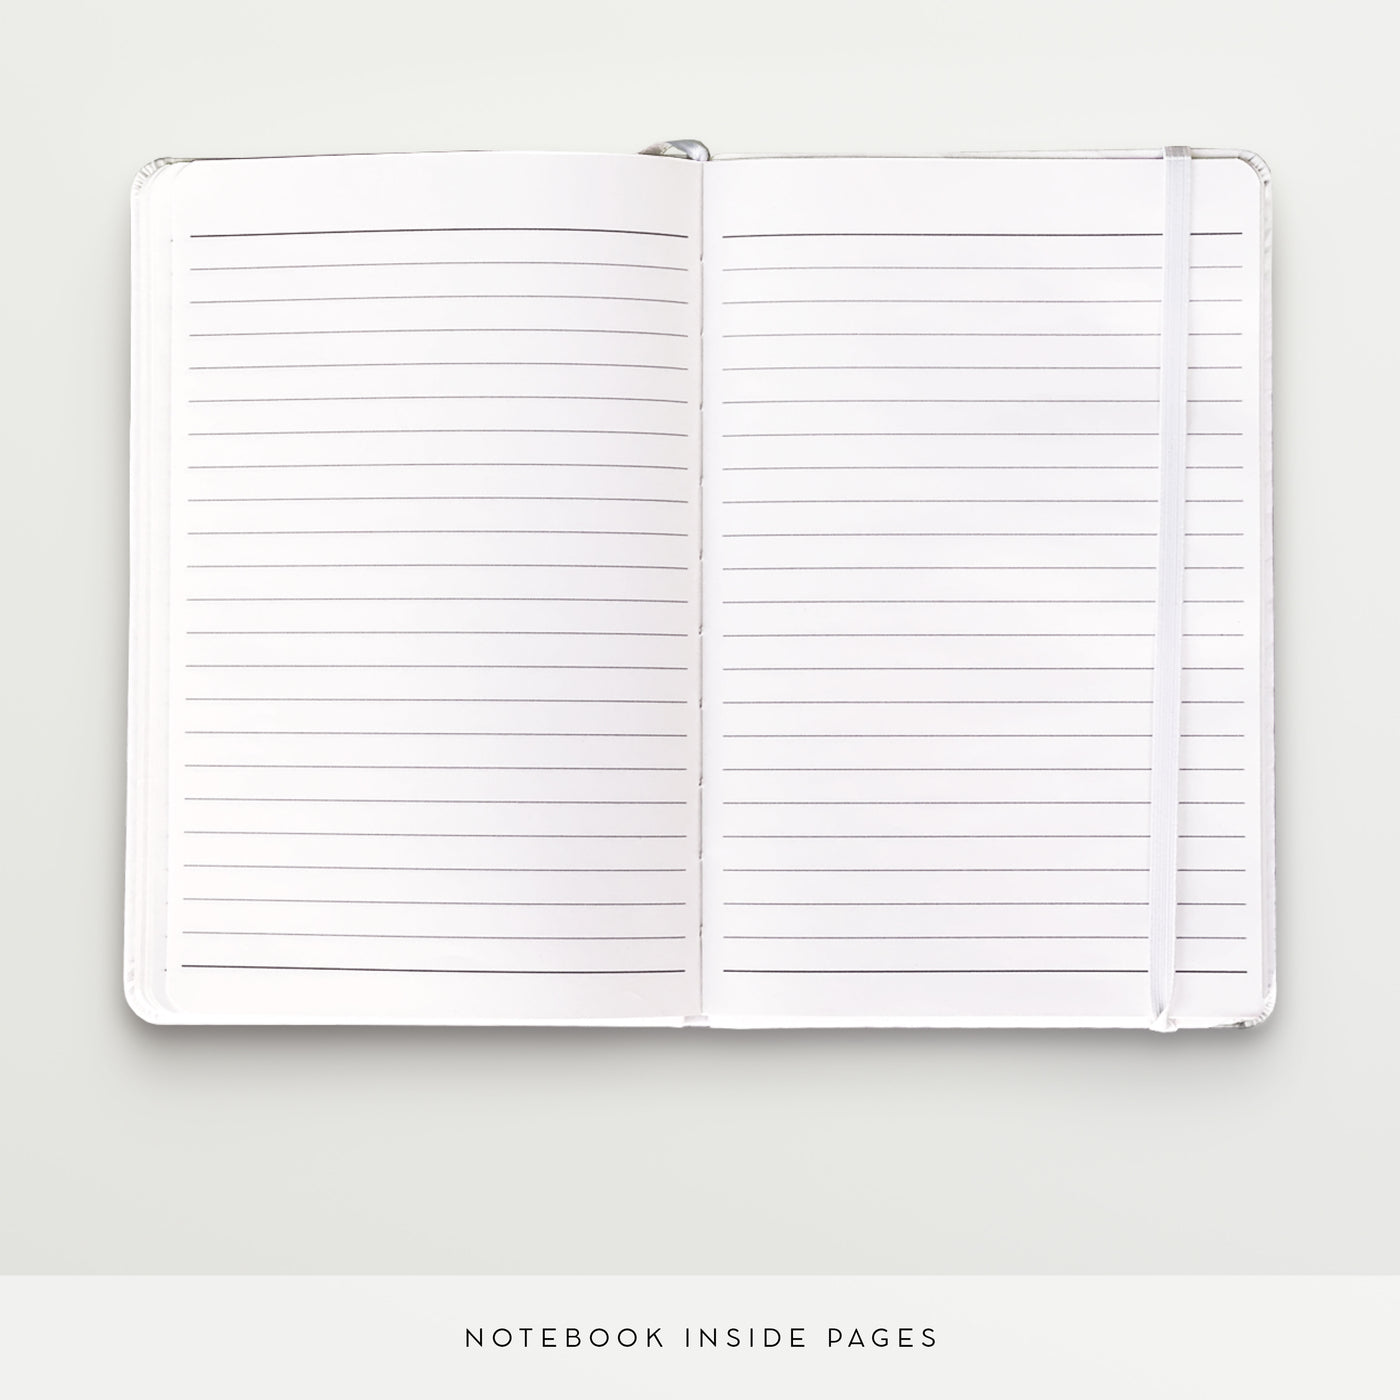 Laurel - Personalised Notebook, Journal